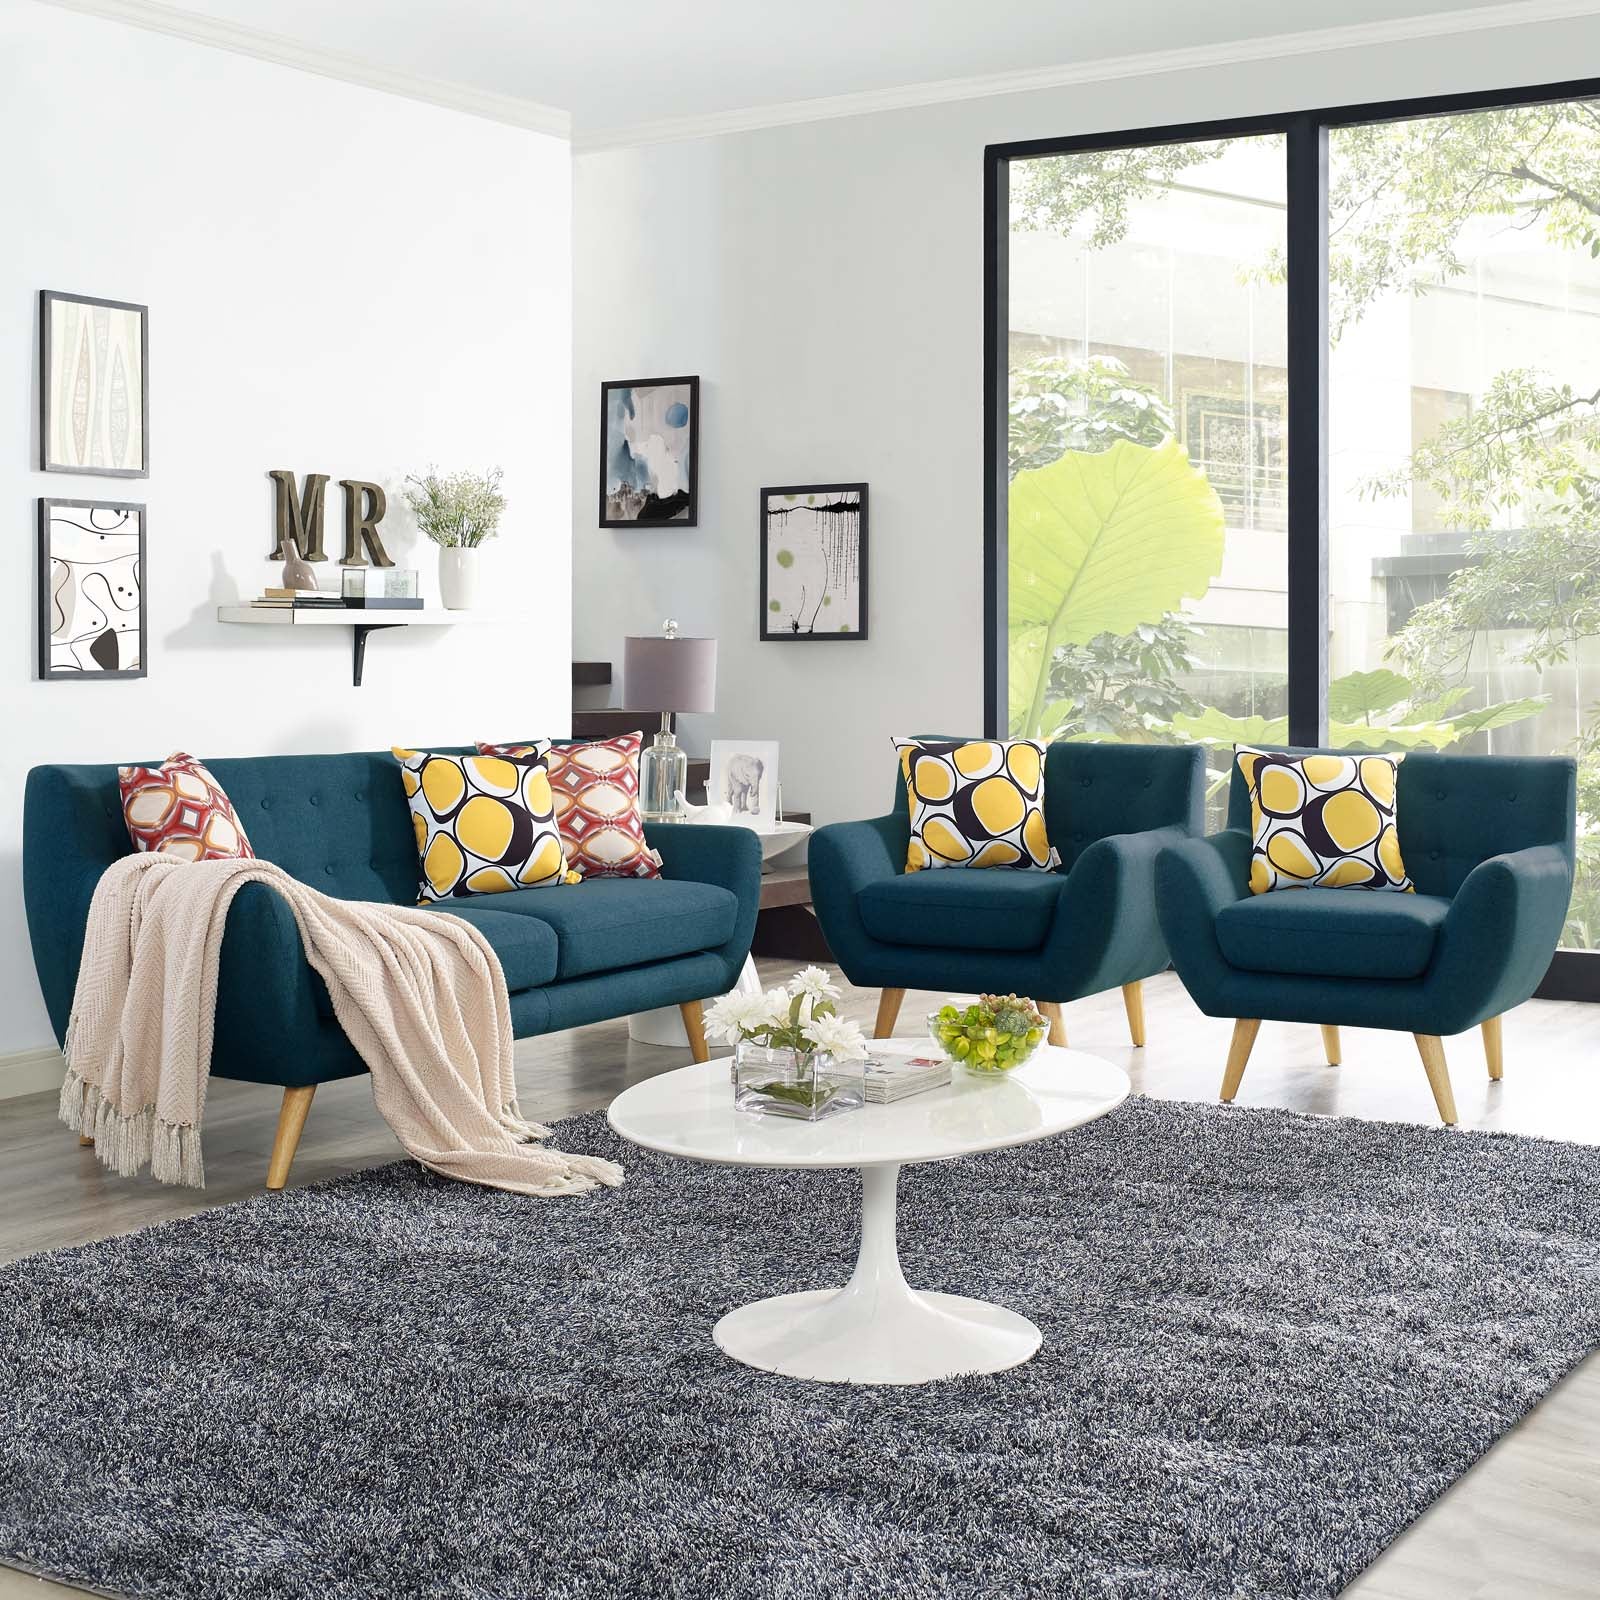 Modway Living Room Sets - Remark 3 Piece Living Room Set Azure